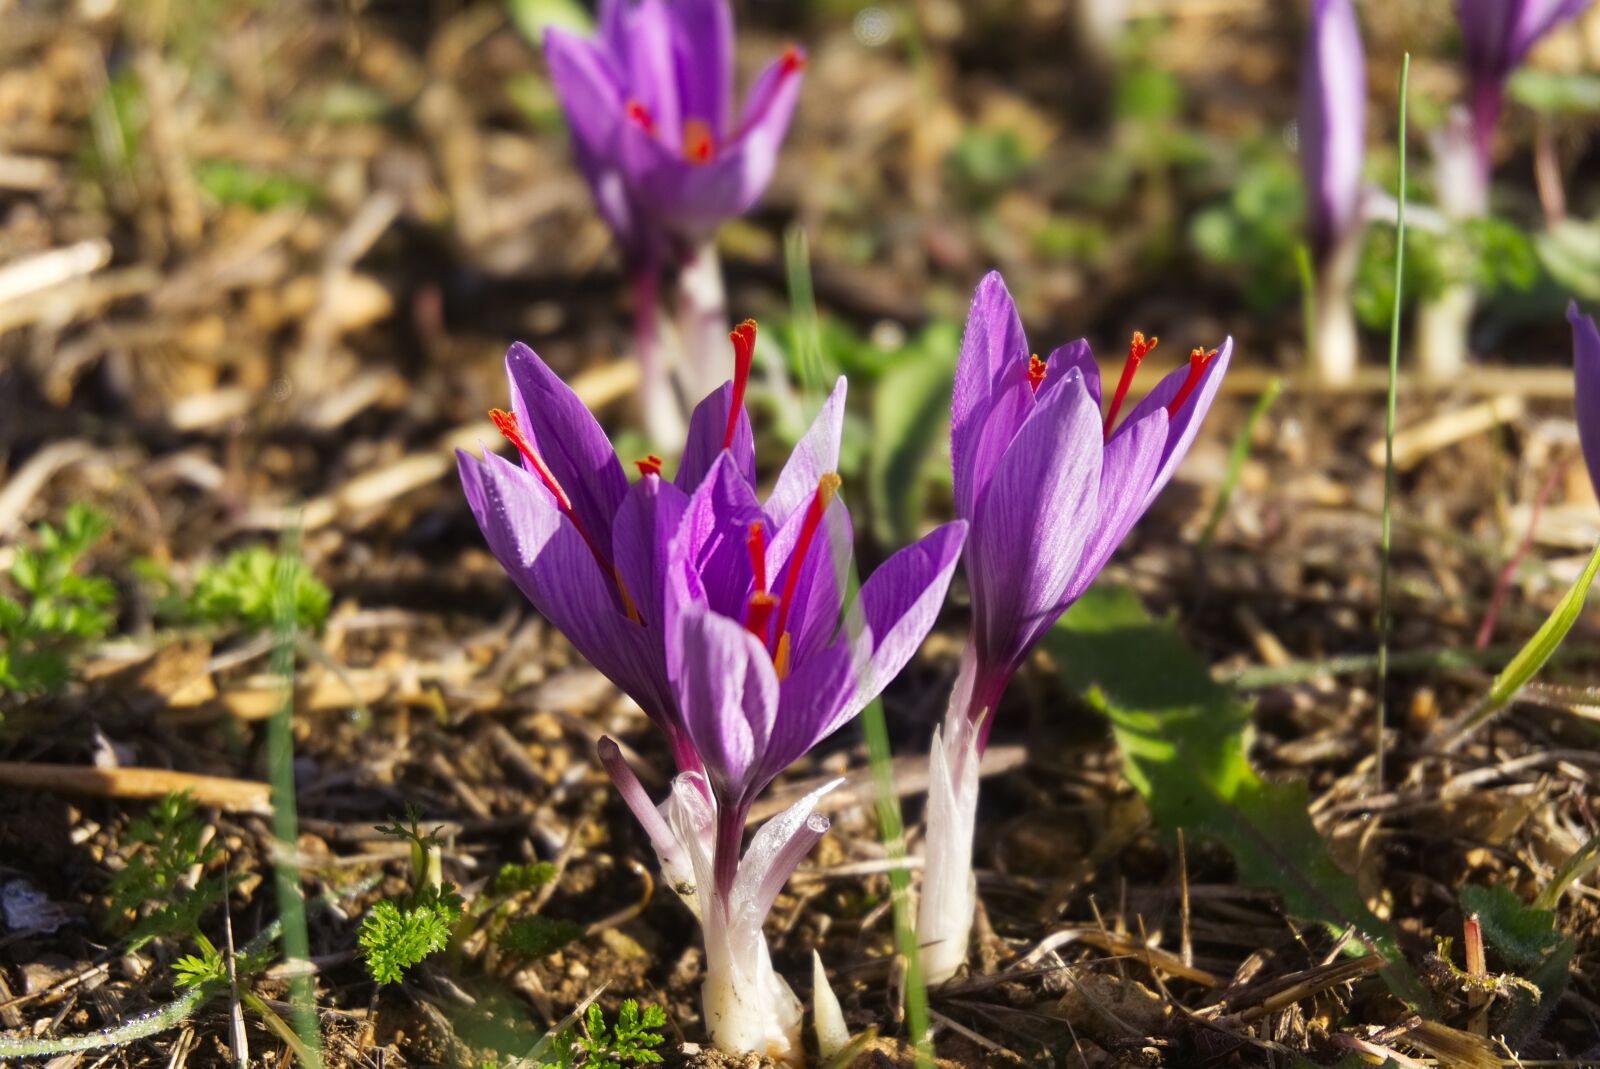 Sony a6000 sample photo. Saffron, crocus sativus, harvest photography